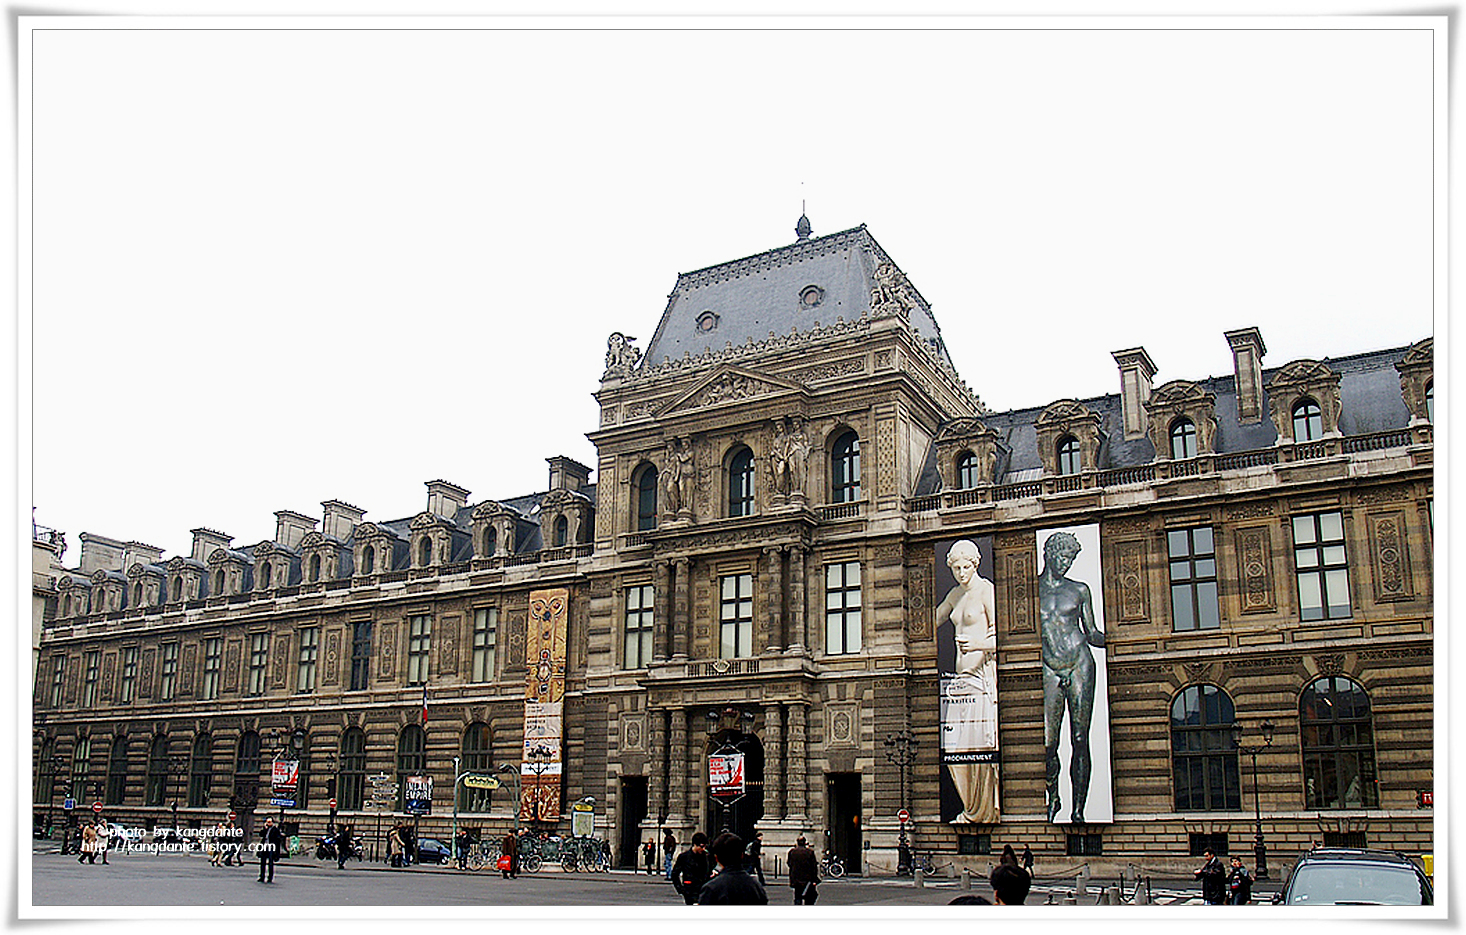 세계 3대 박물관 중 하나, 프랑스 루브르박물관